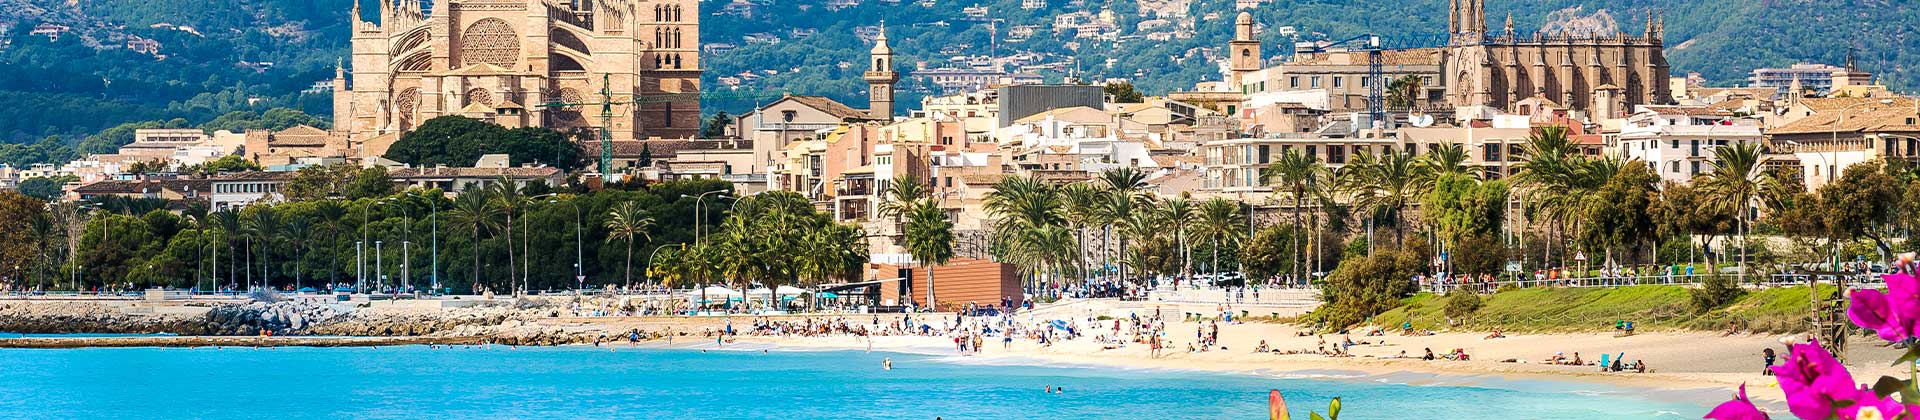 Paisaje de Palma de Mallorca con casco histórico